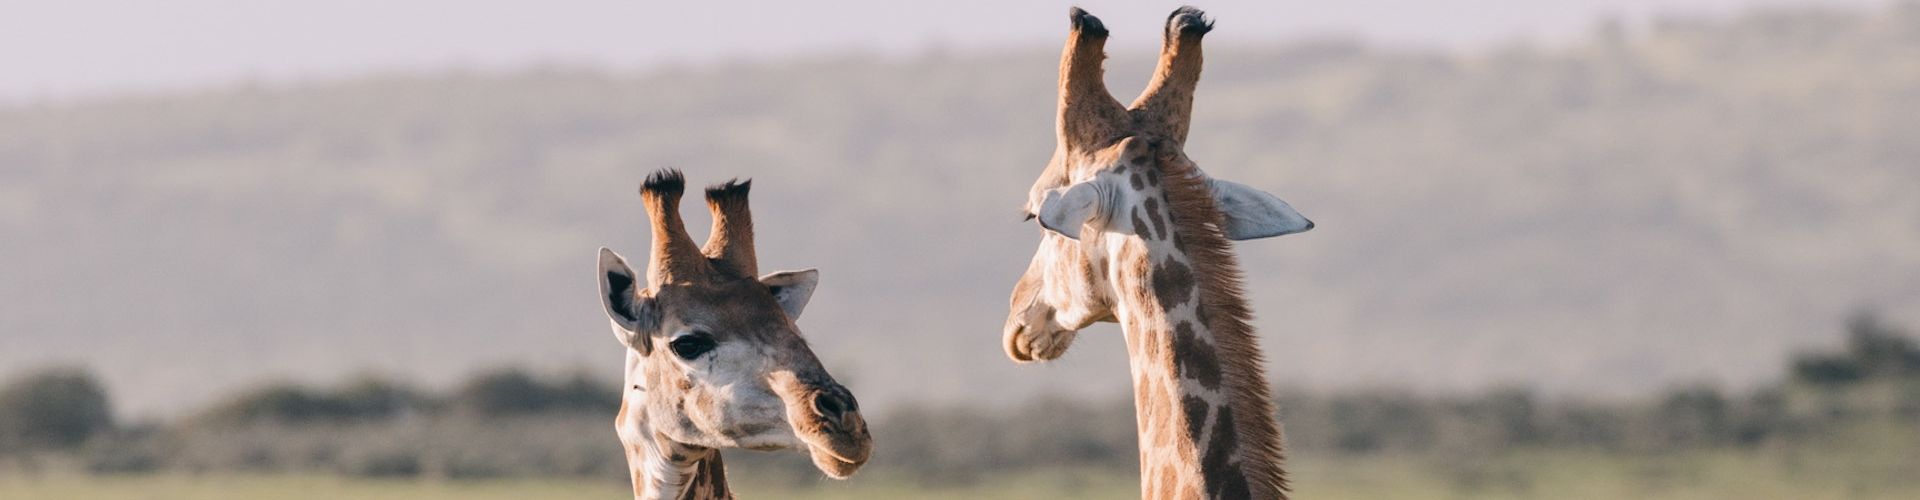 Due giraffe che conversano